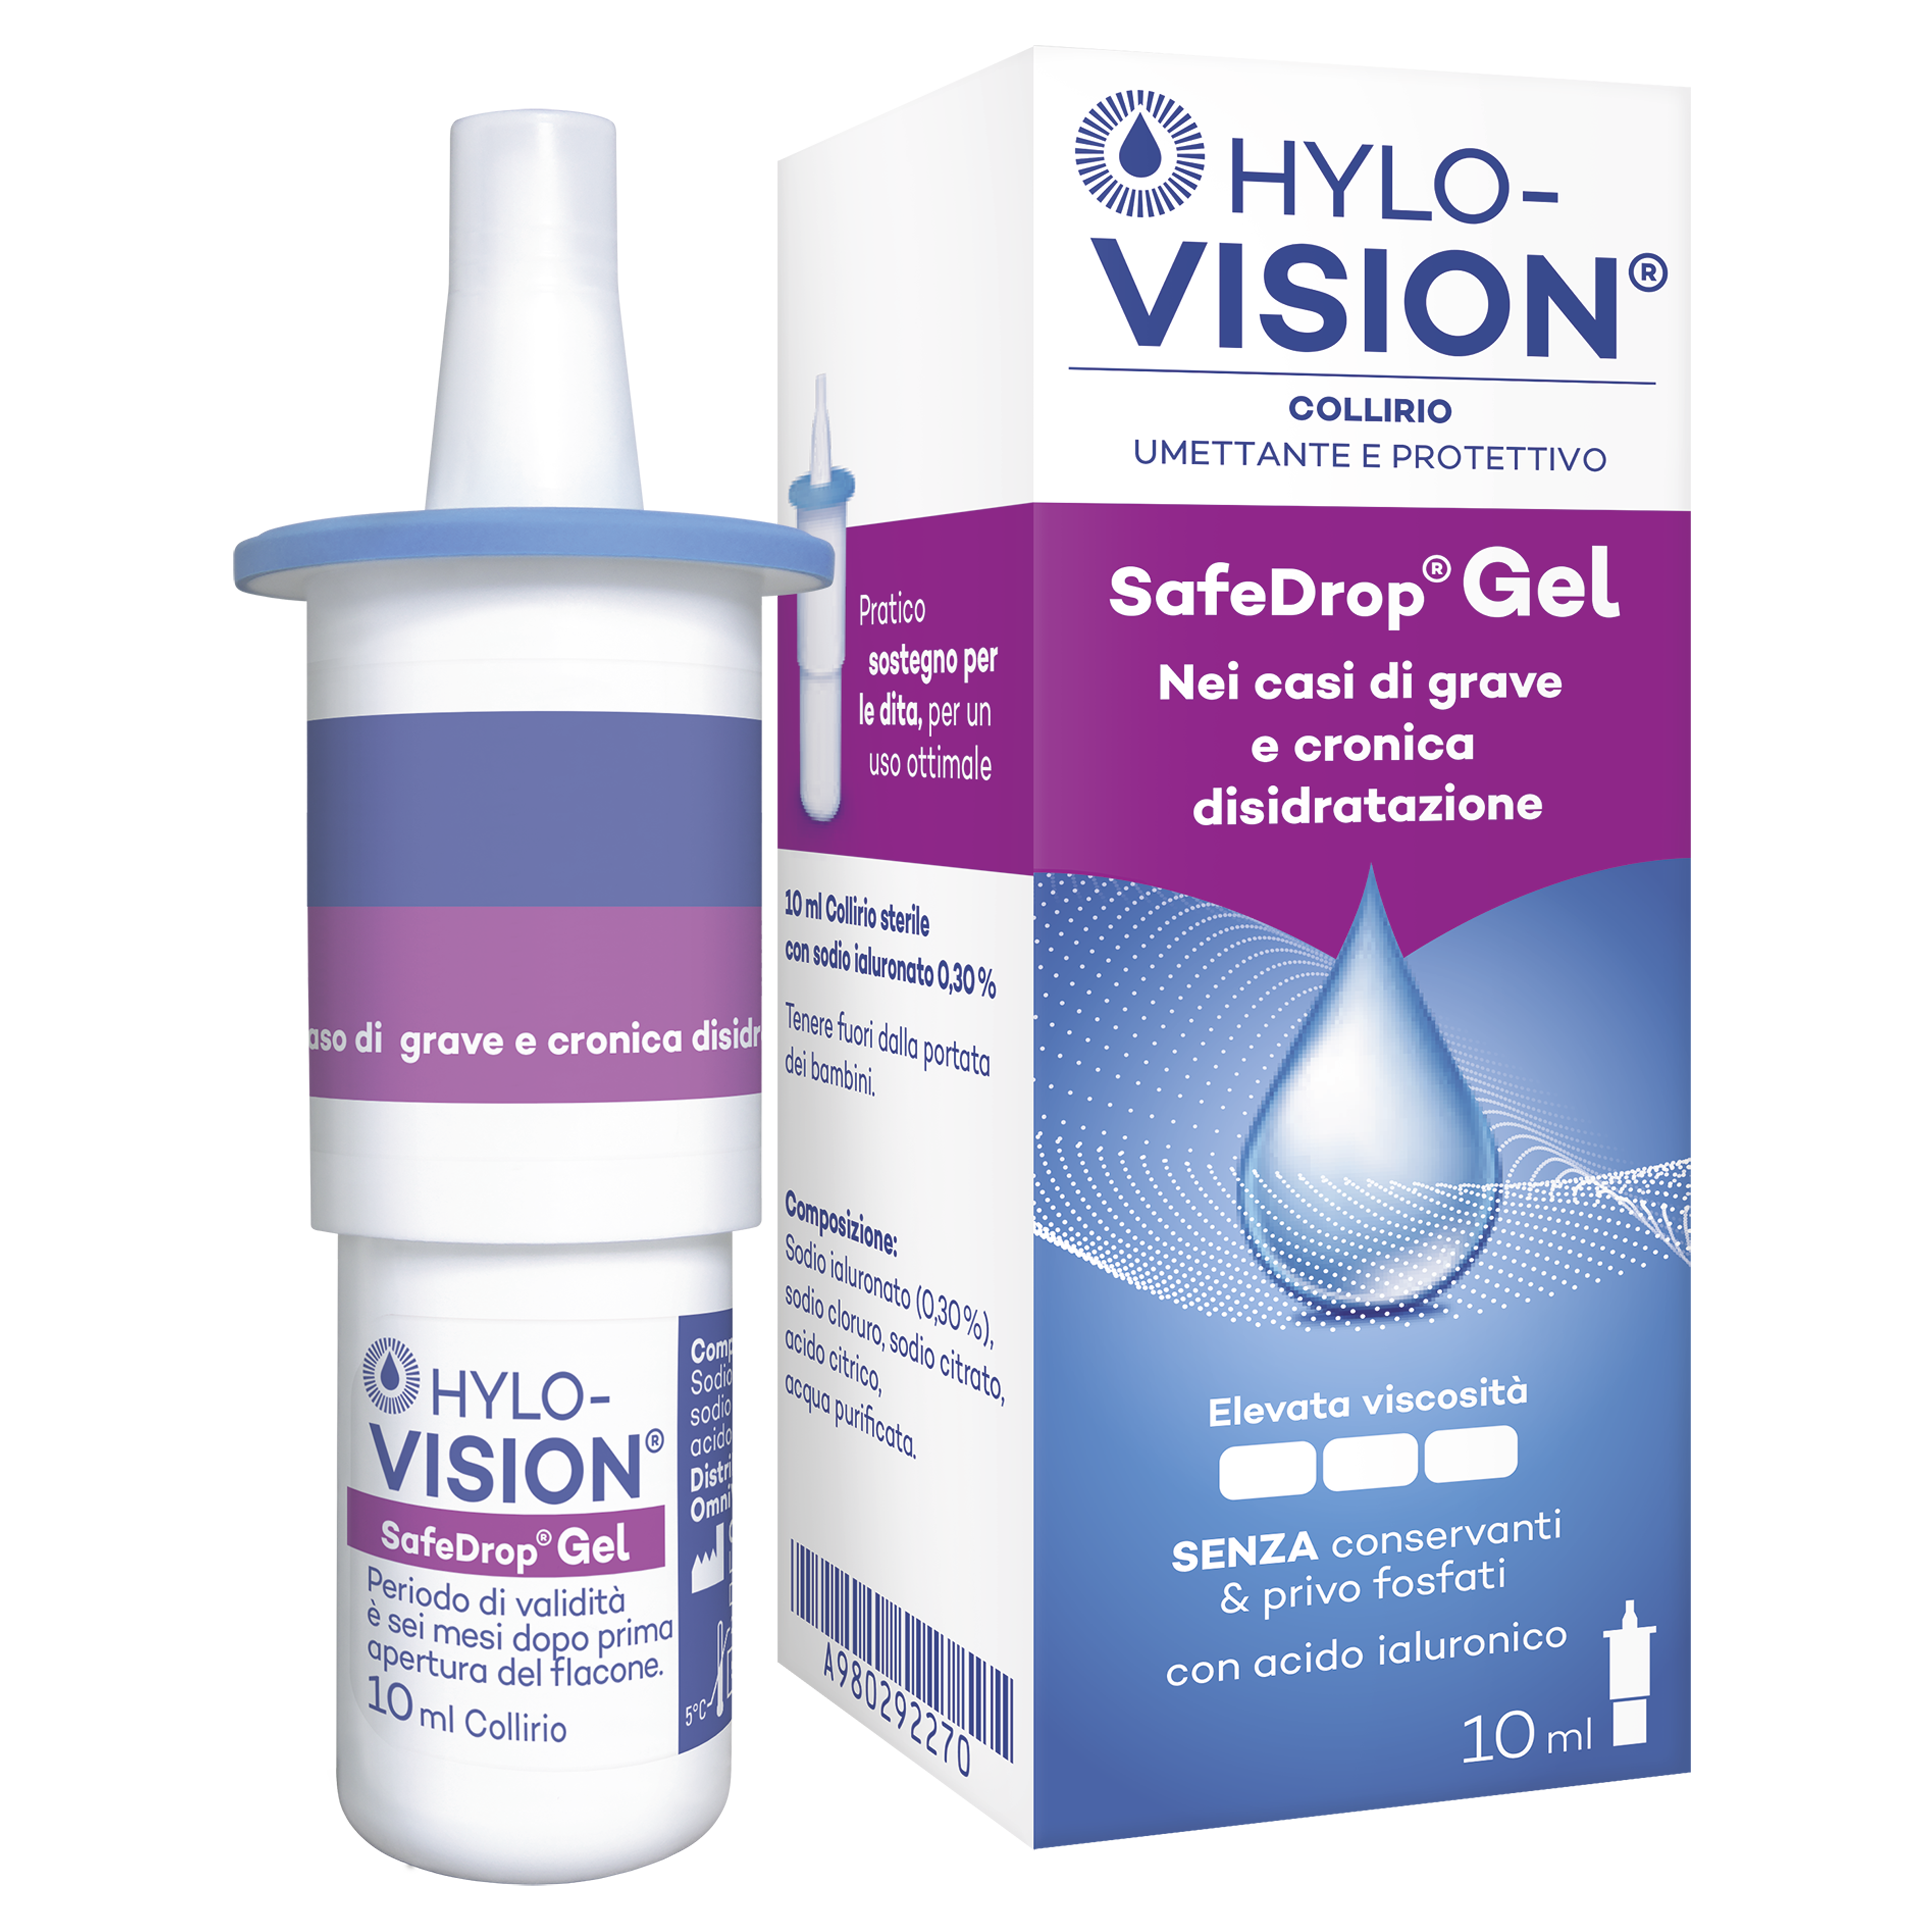 HYLO-VISION® SafeDrop® Gel